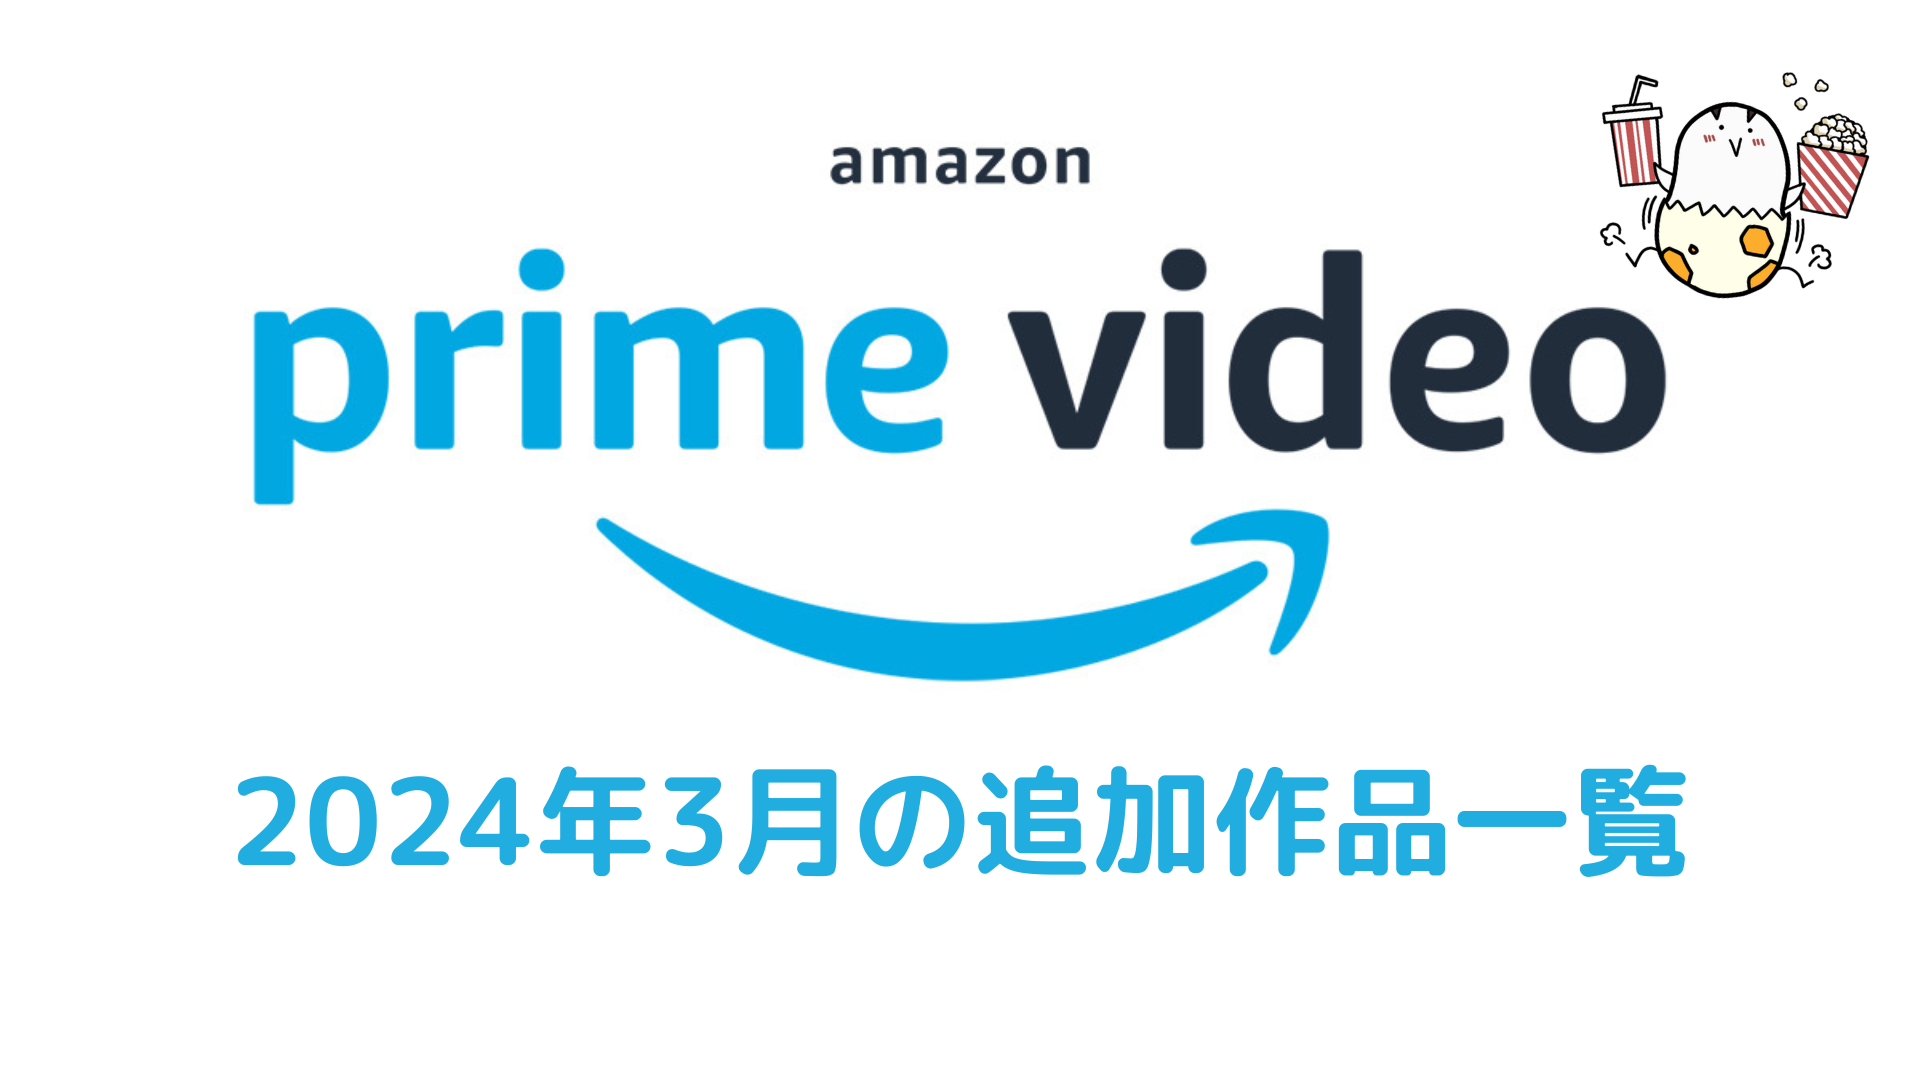 Amazonプライム・ビデオ 2024年3月配信作品一覧 『トップガン マーヴェリック』『グランツーリスモ』『タイタニック』『ドラえもん のび太と空の理想郷』他